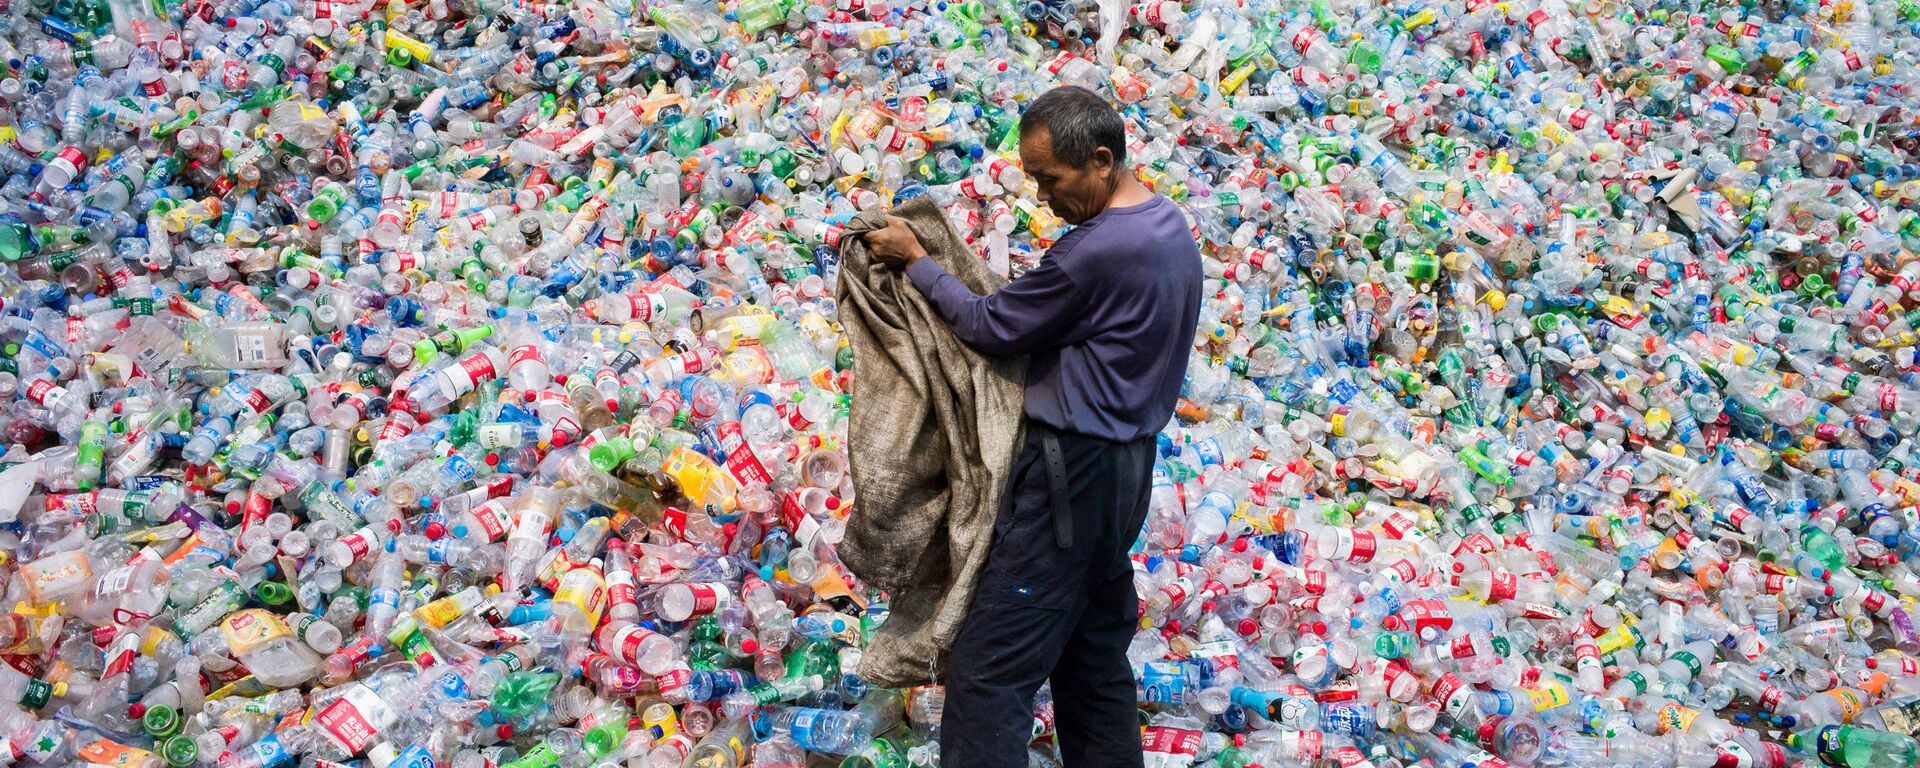 Công nhân Trung Quốc phân loại chai nhựa để tái chế ở ngoại ô Bắc Kinh - Sputnik Việt Nam, 1920, 01.12.2020